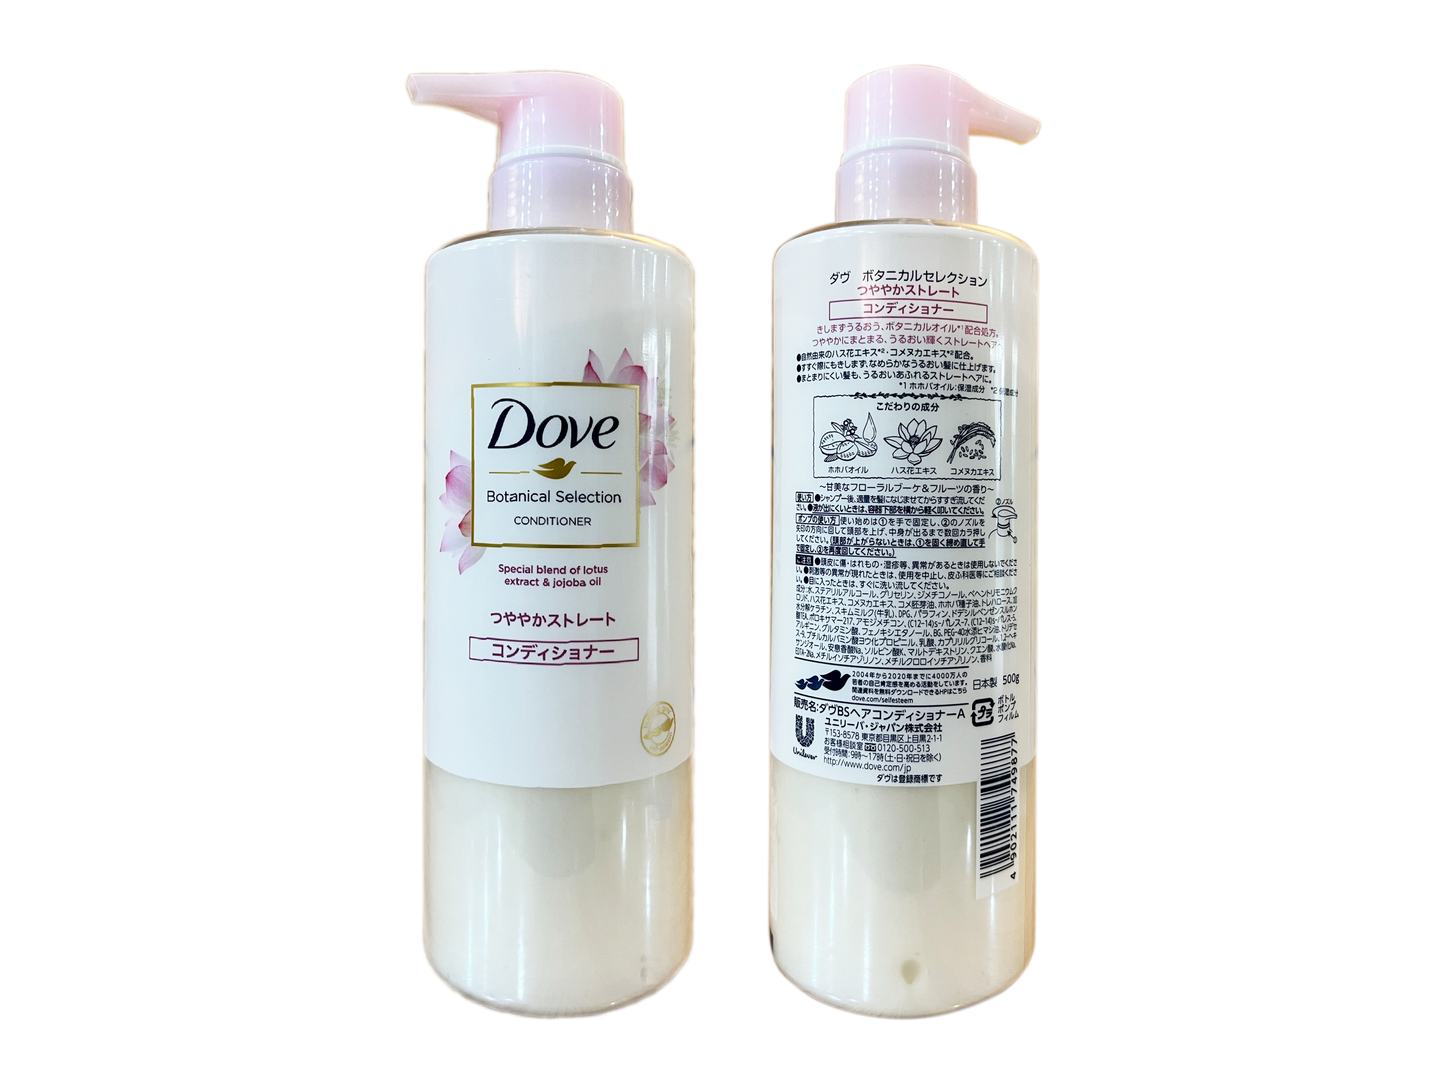 Dove, Lotus Extract & Jojoba Oil, Conditioner (500 g)